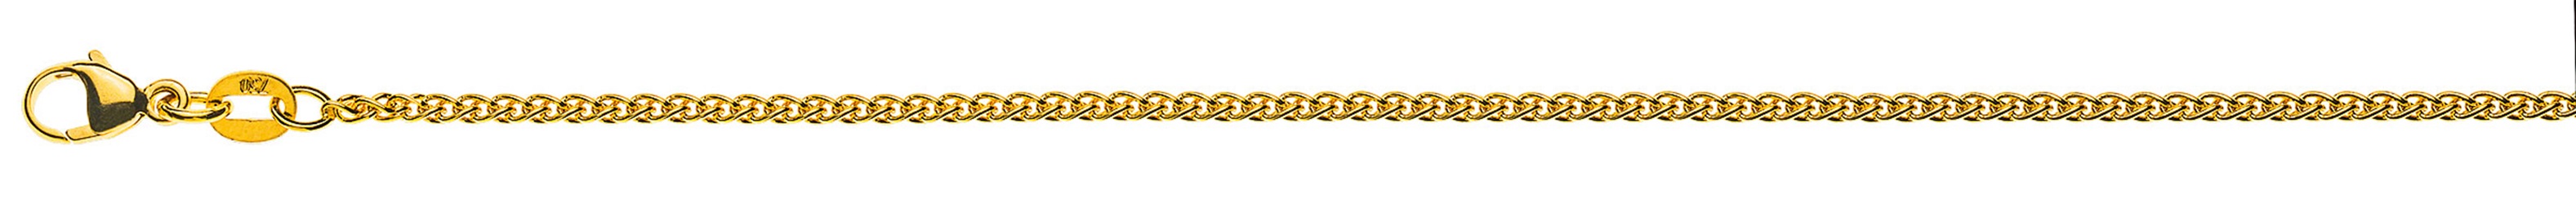 AURONOS Prestige Halskette Gelbgold 18K Zopfkette 45cm 1.6mm